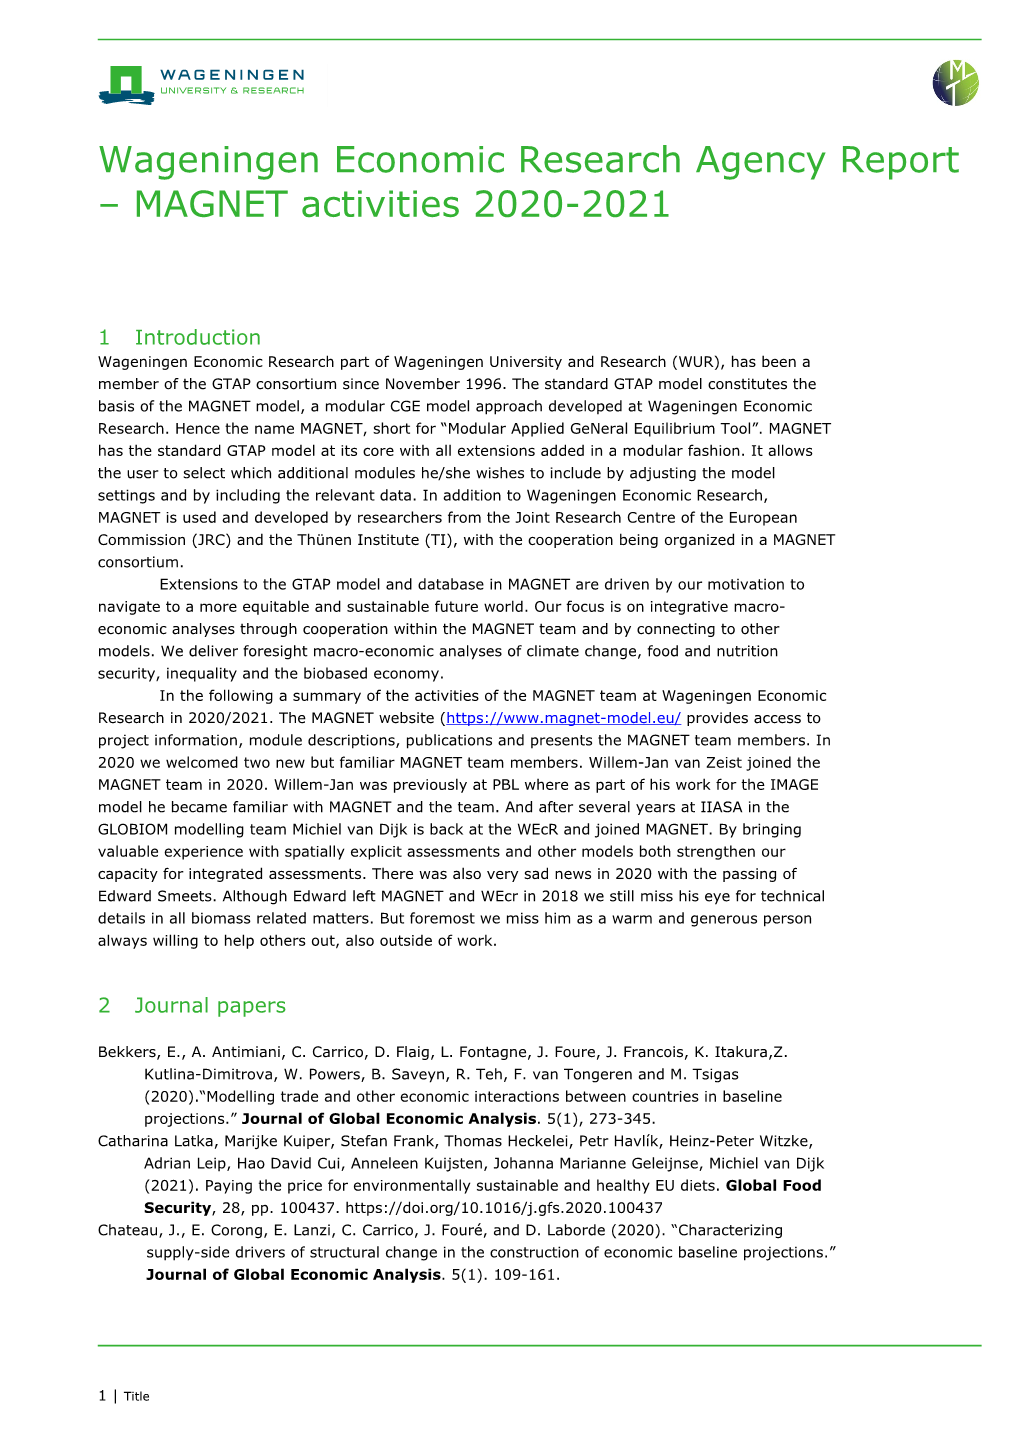 Wageningen Economic Research Agency Report – MAGNET Activities 2020-2021